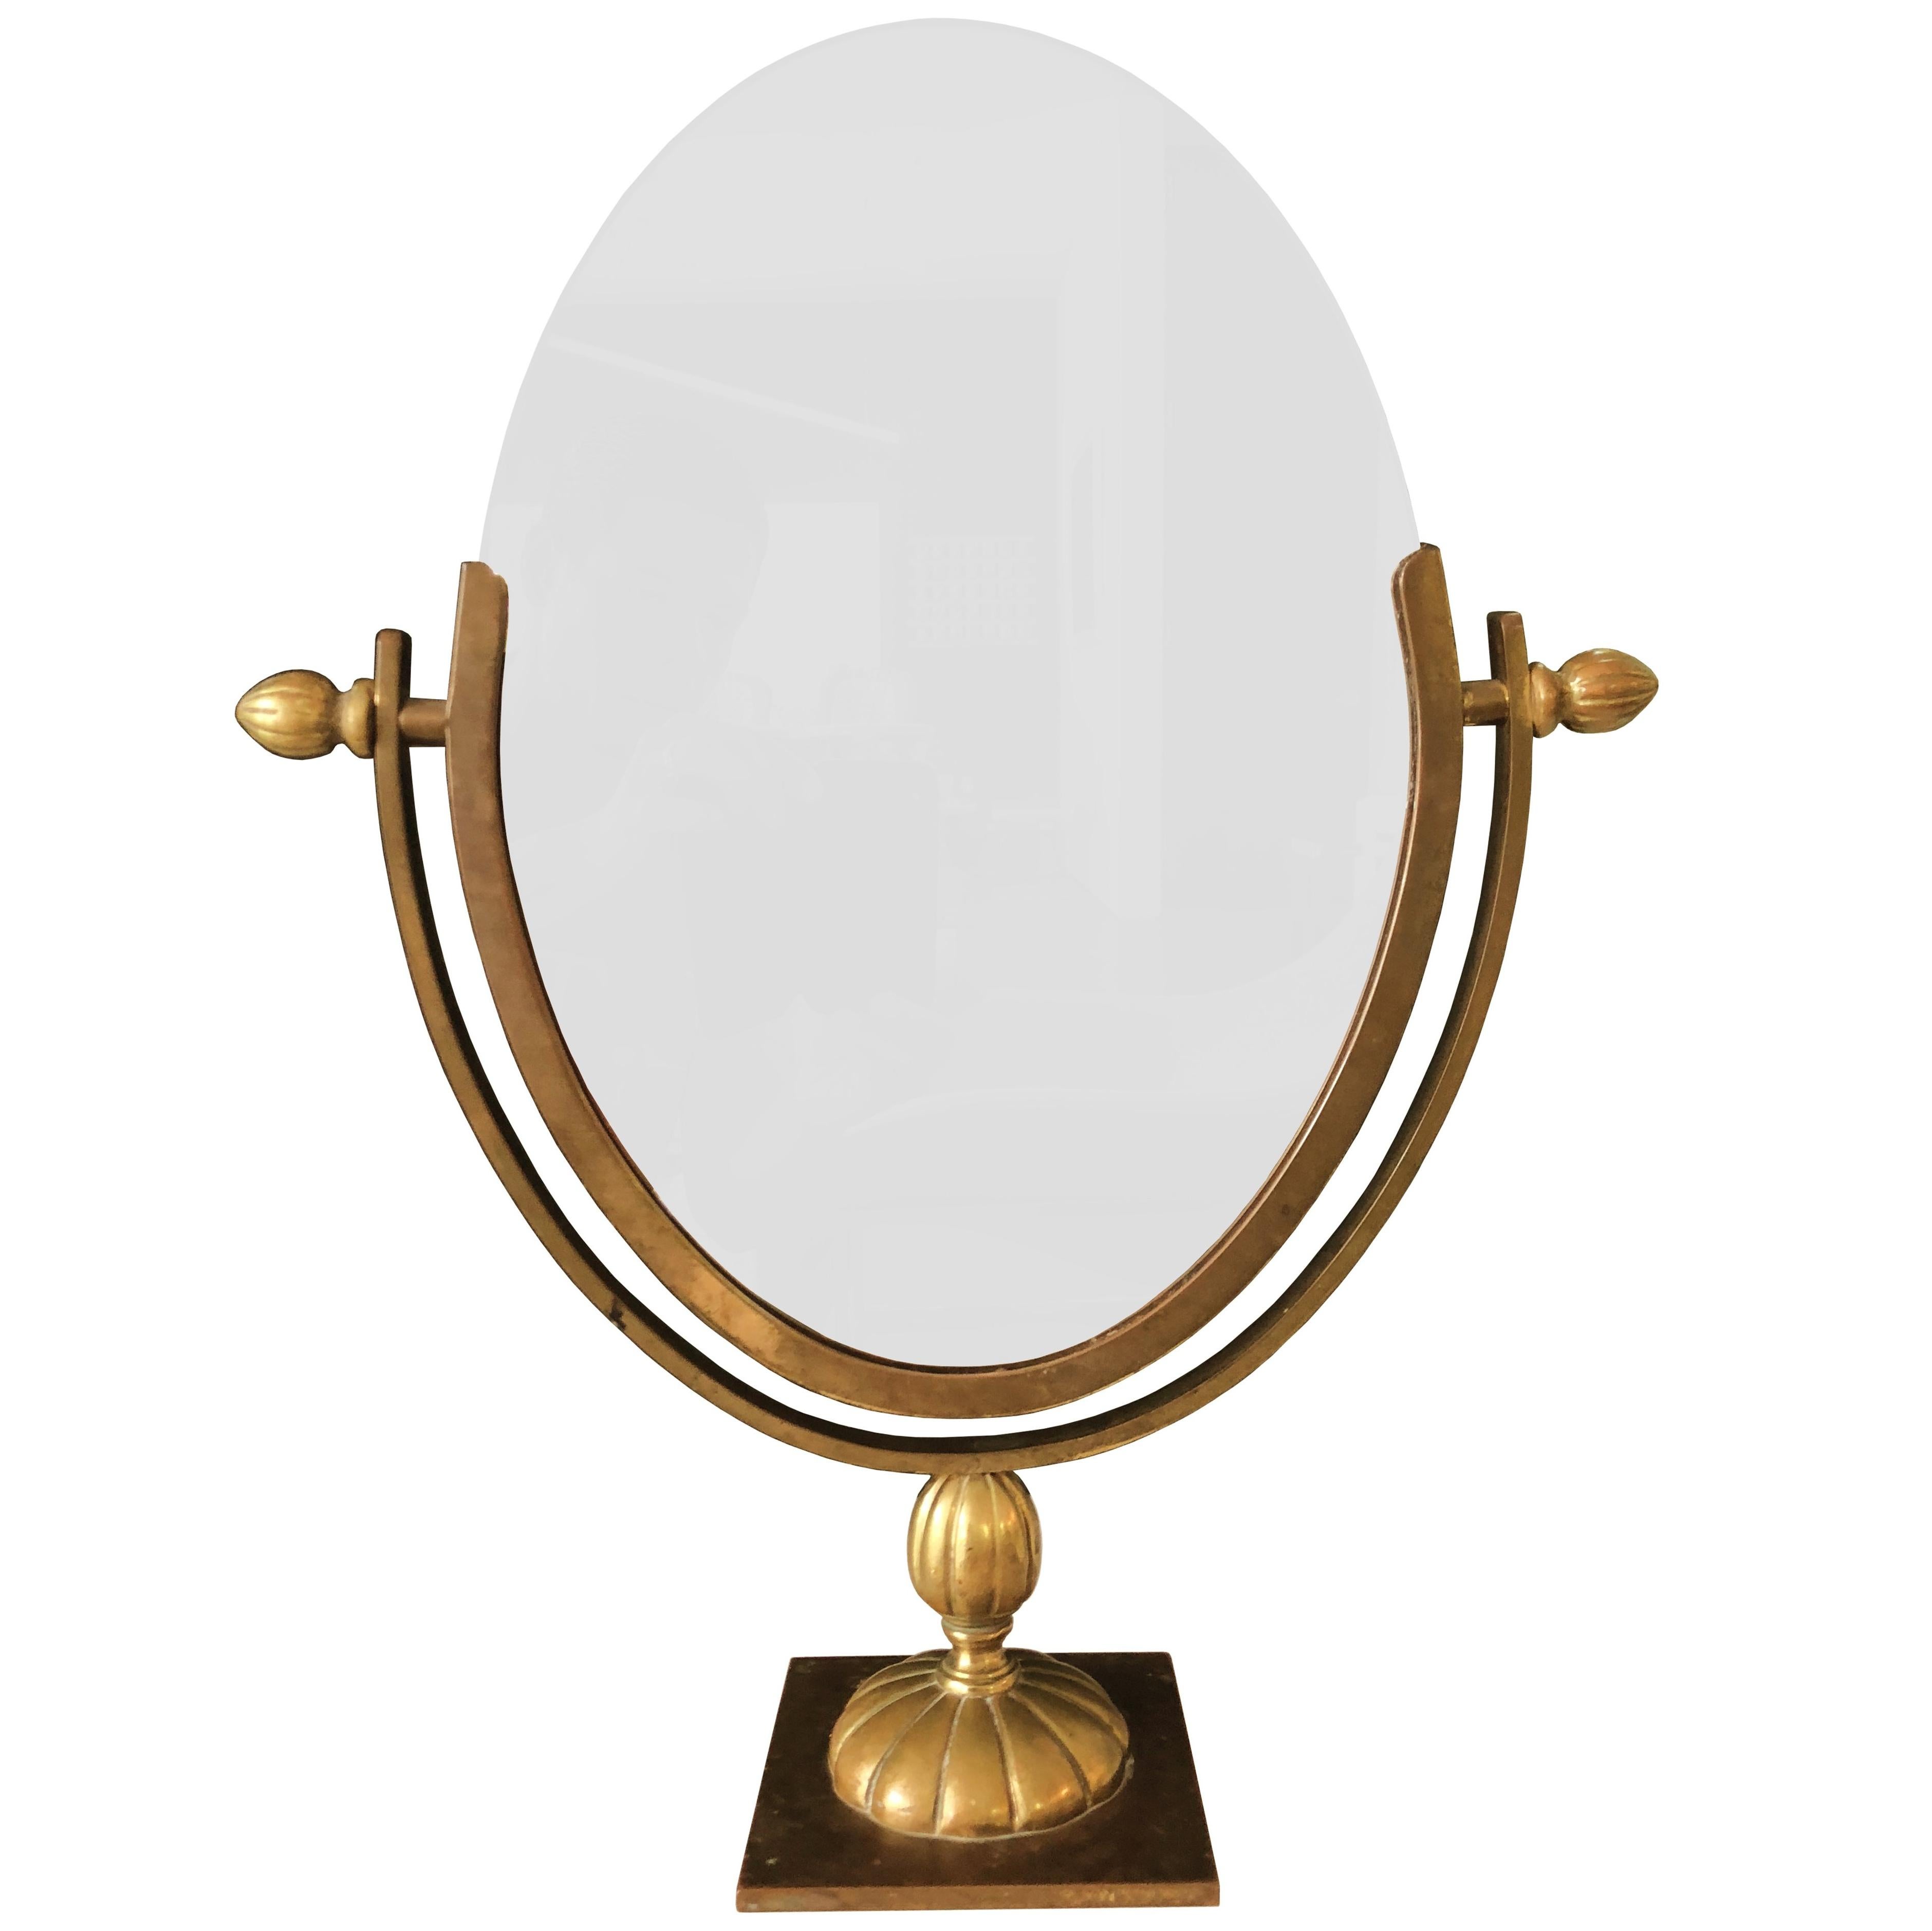 Charles Hollis Jones Vanity or Table Mirror in Antique Brass